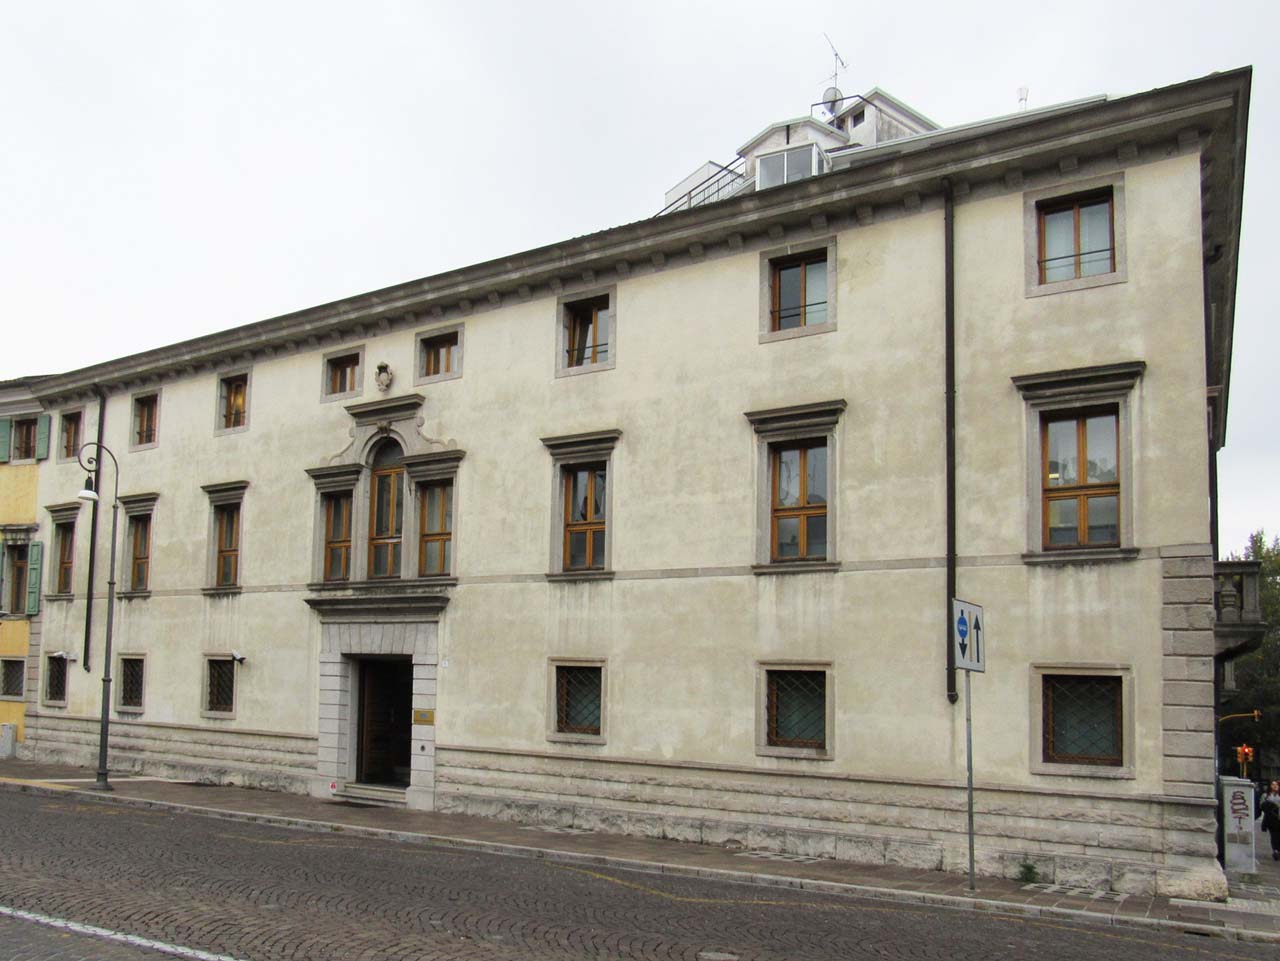 Casa de Rubeis, Perusini, Chiesa (palazzo, privato) - Udine (UD) 